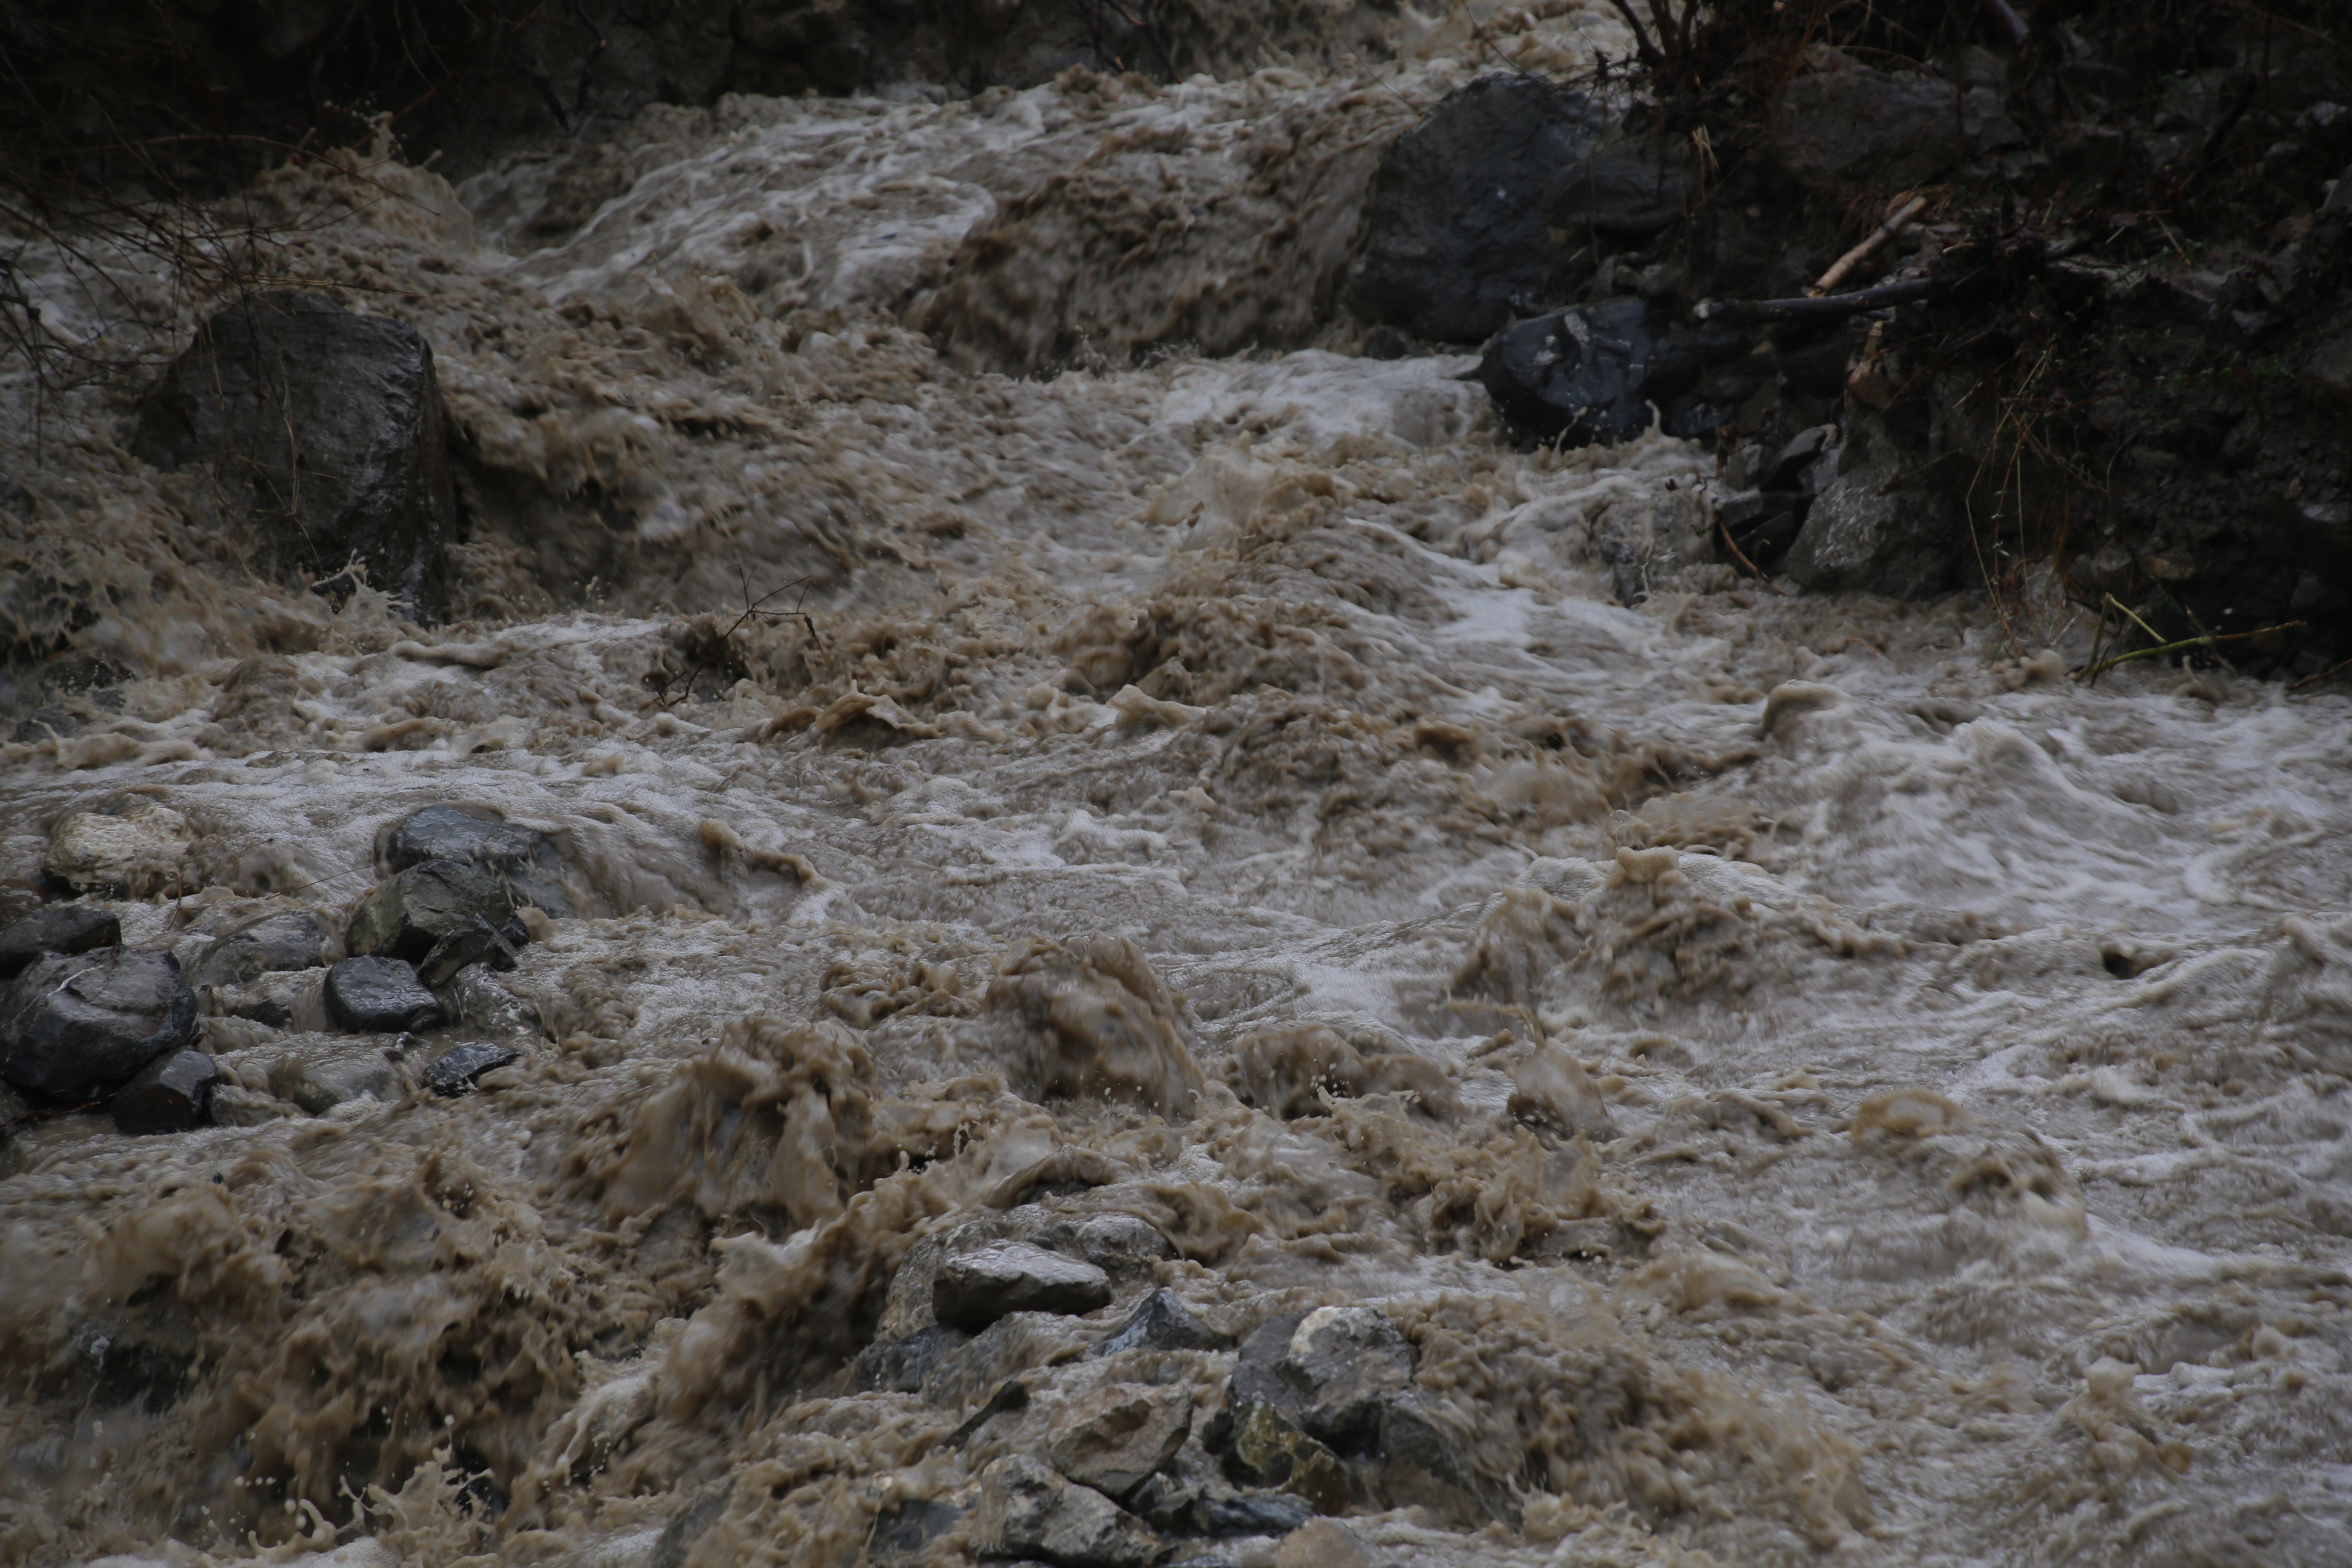 Inondations : toutes nos pensées émues et solidaires pour les habitants des Alpes Maritimes